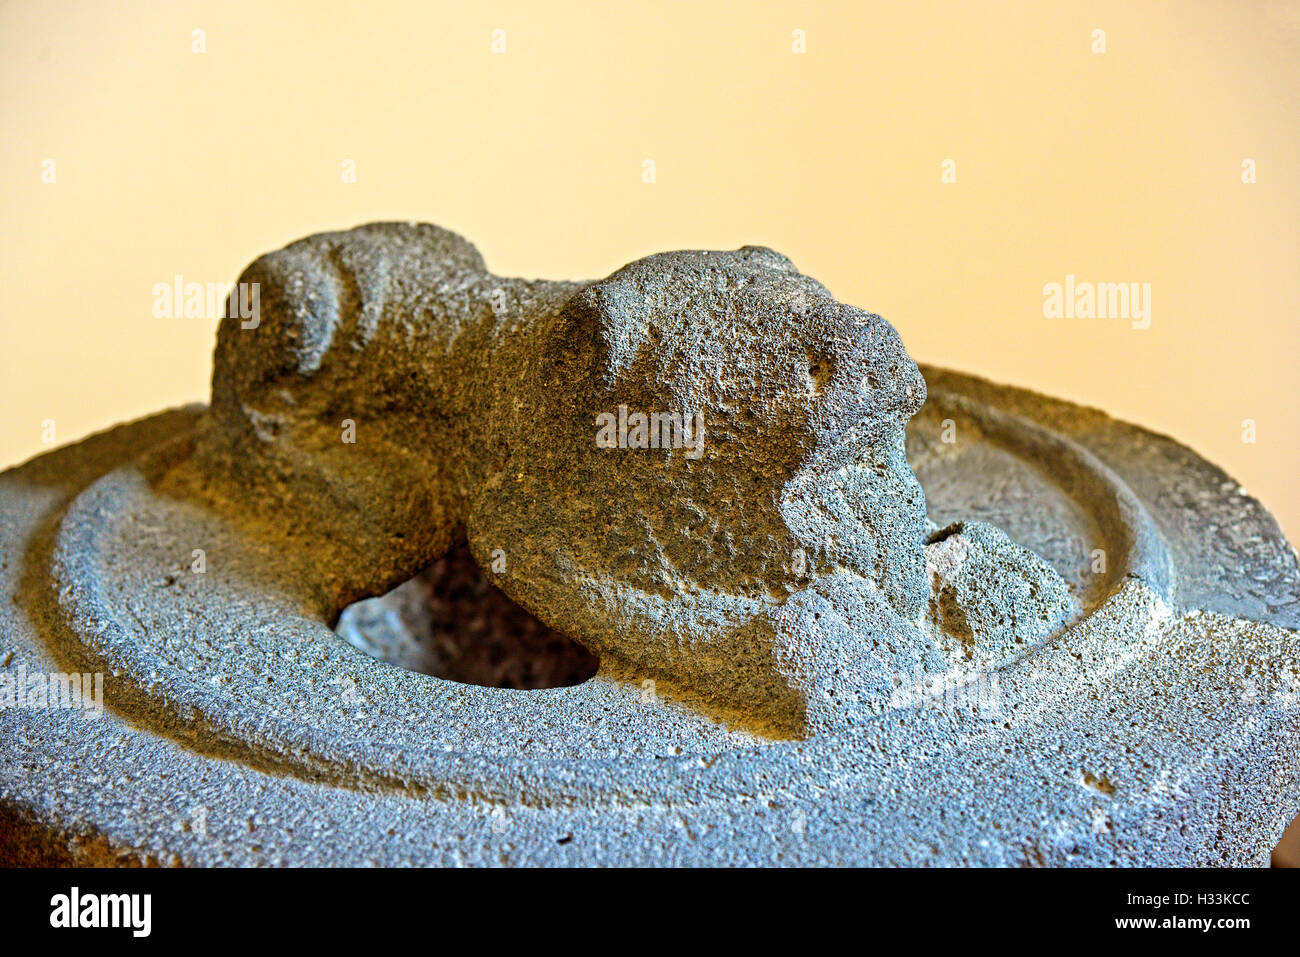 Italien Sizilien Äolischen Inseln Lipari Insel archäologische Museum A  gehauenen Stein Beerdigung Abdeckung genannt Bothros di Eolo  Stockfotografie - Alamy